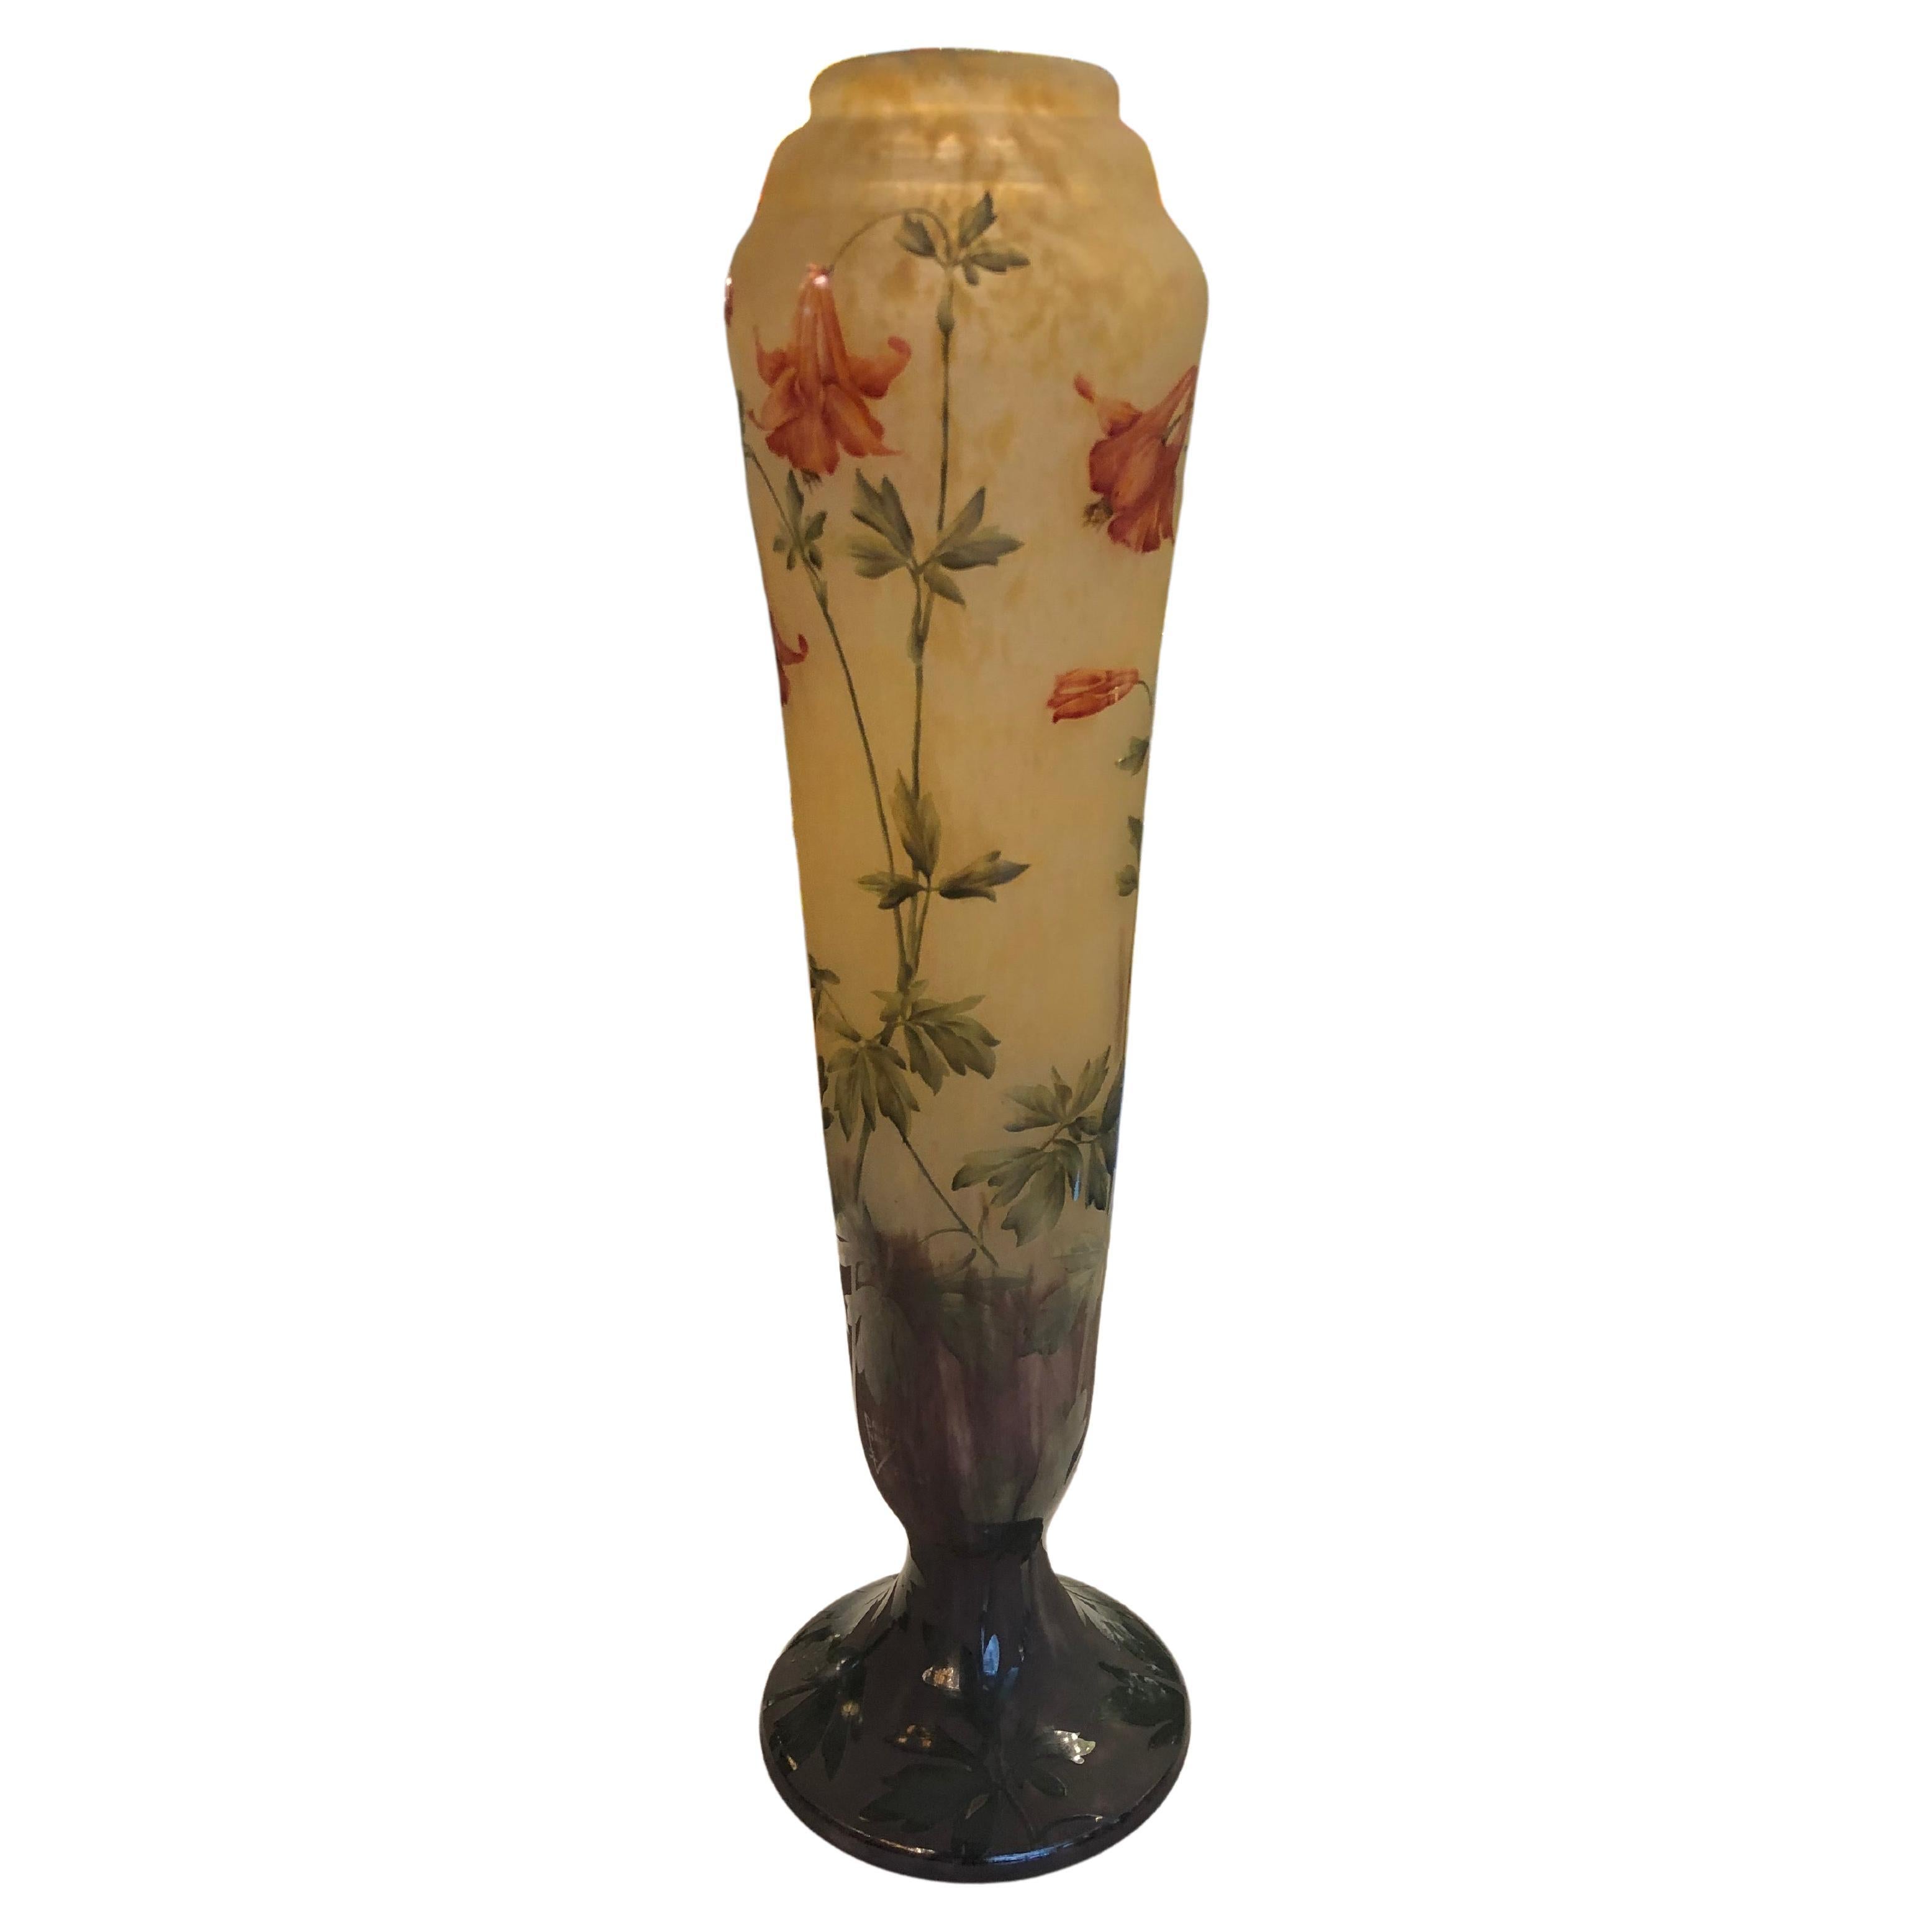 Vase monumental, signé Daum Nancy France, style Jugendstil, Art nouveau, 1910